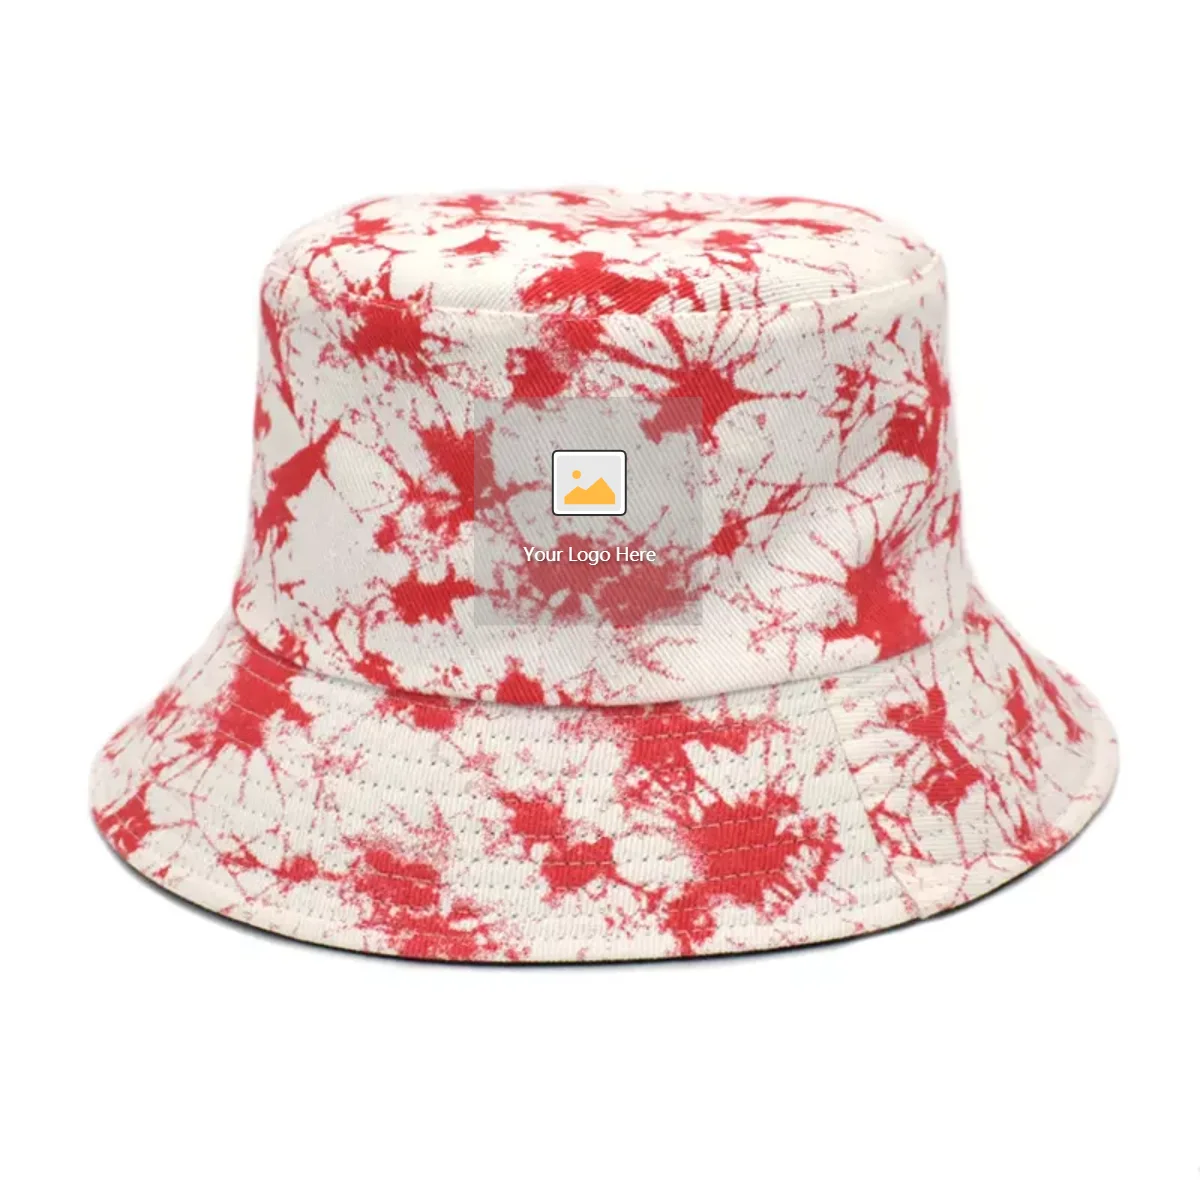 4 Pieces Unisex Bucket Hat Embroidered Summer Fisherman Cap Reversible Sun Hat for Men Women Kids Teens 